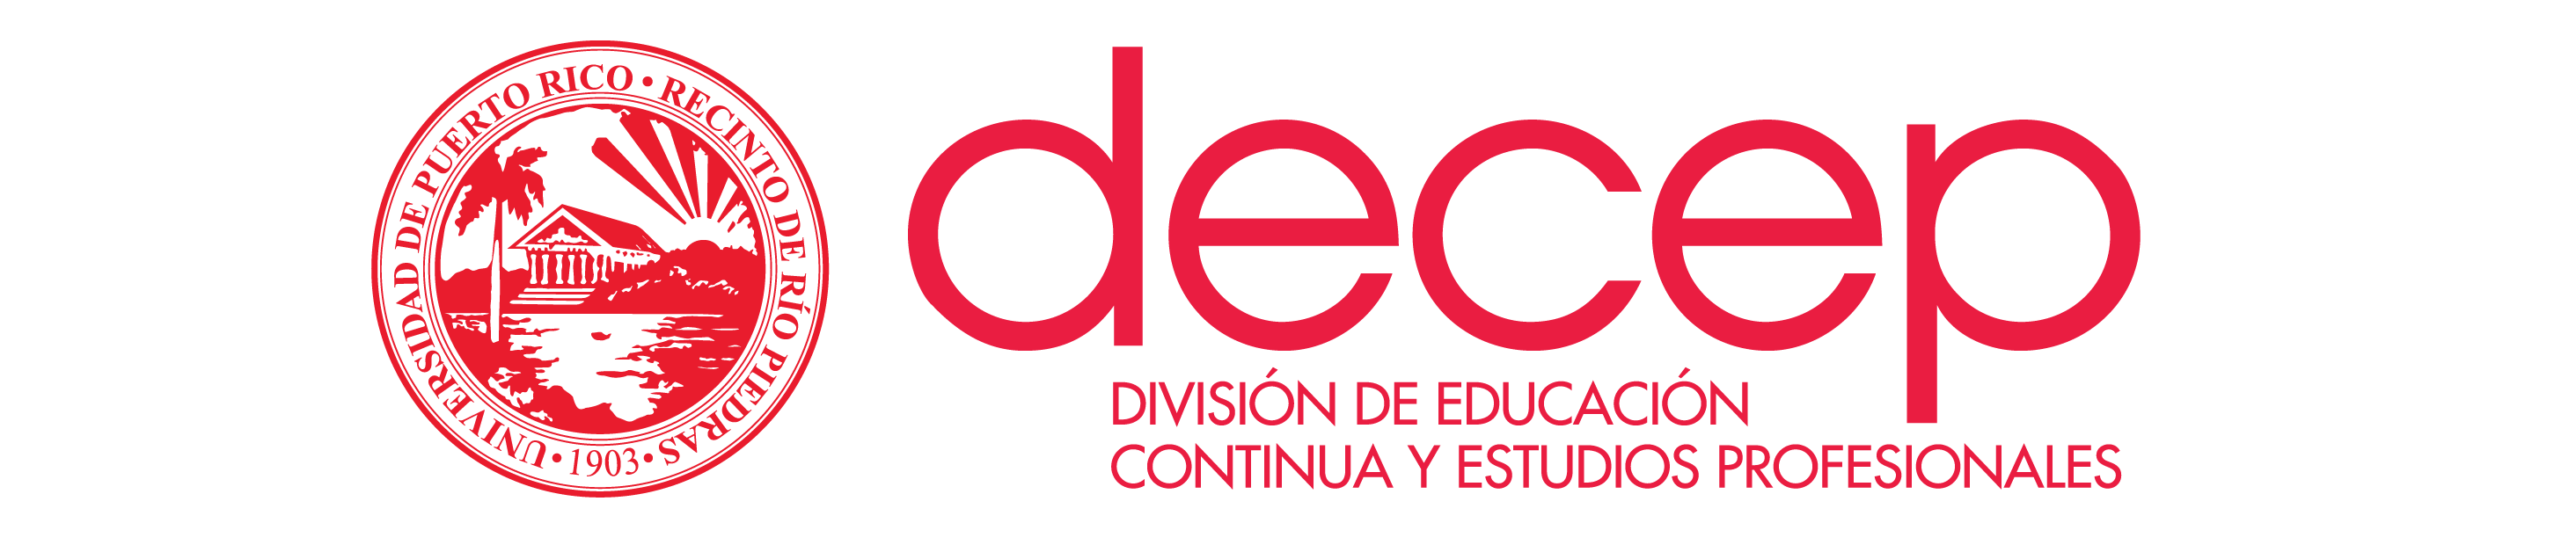 División de Educación Continua y Estudios Profesionales